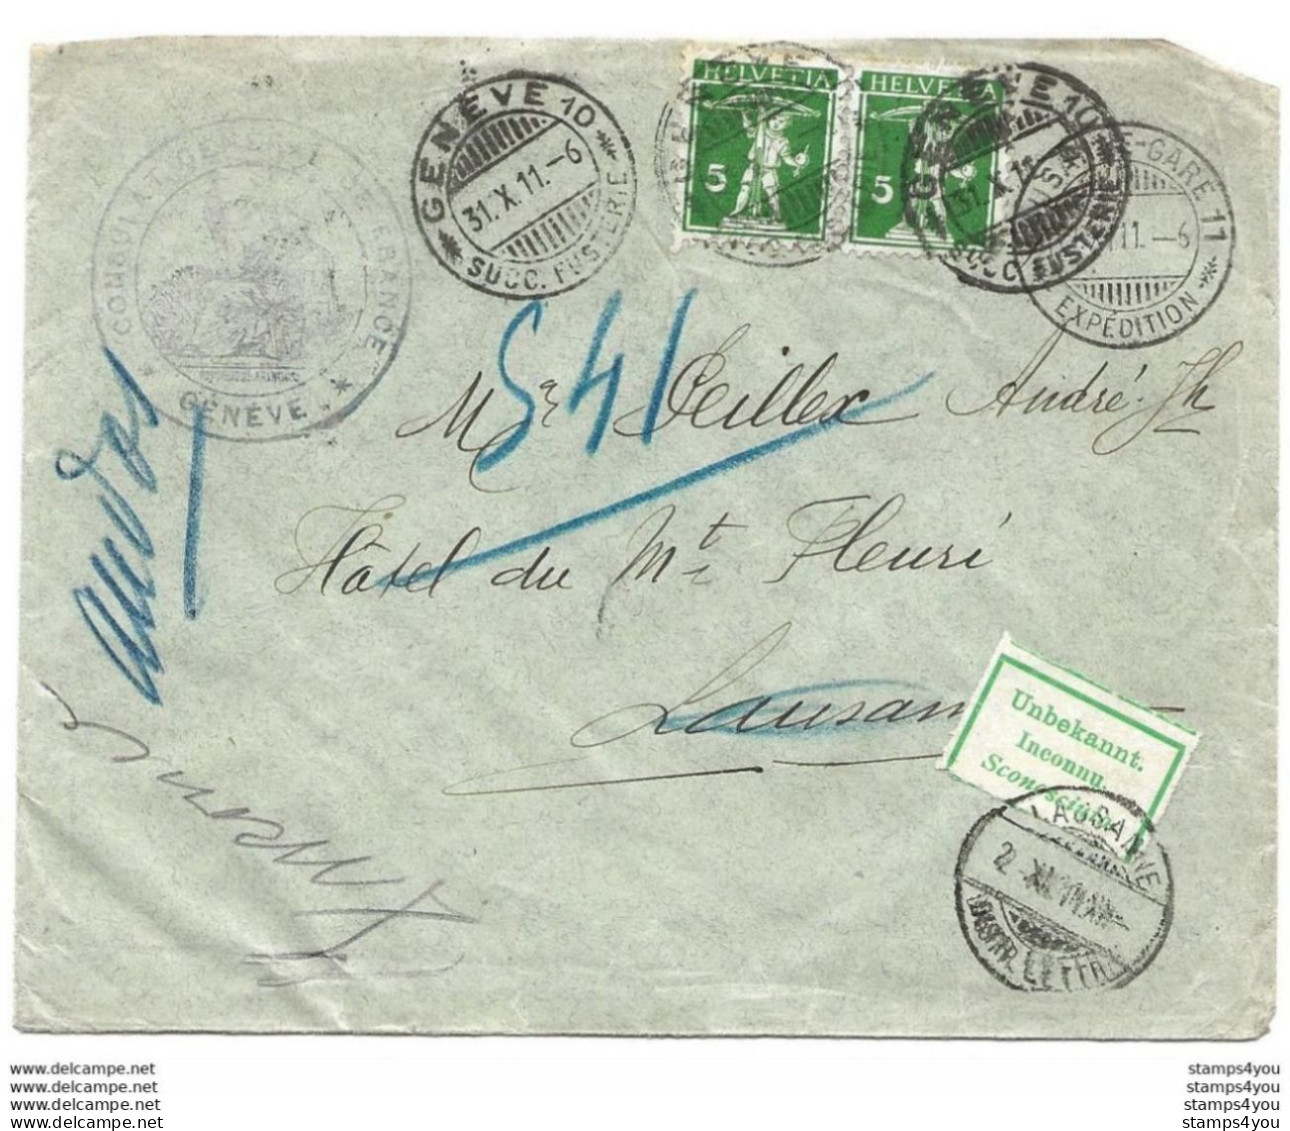 278 - 74 - Enveloppe Envoyée De Genève à Lausanne 1911 - étiquette "inconnu" - Covers & Documents